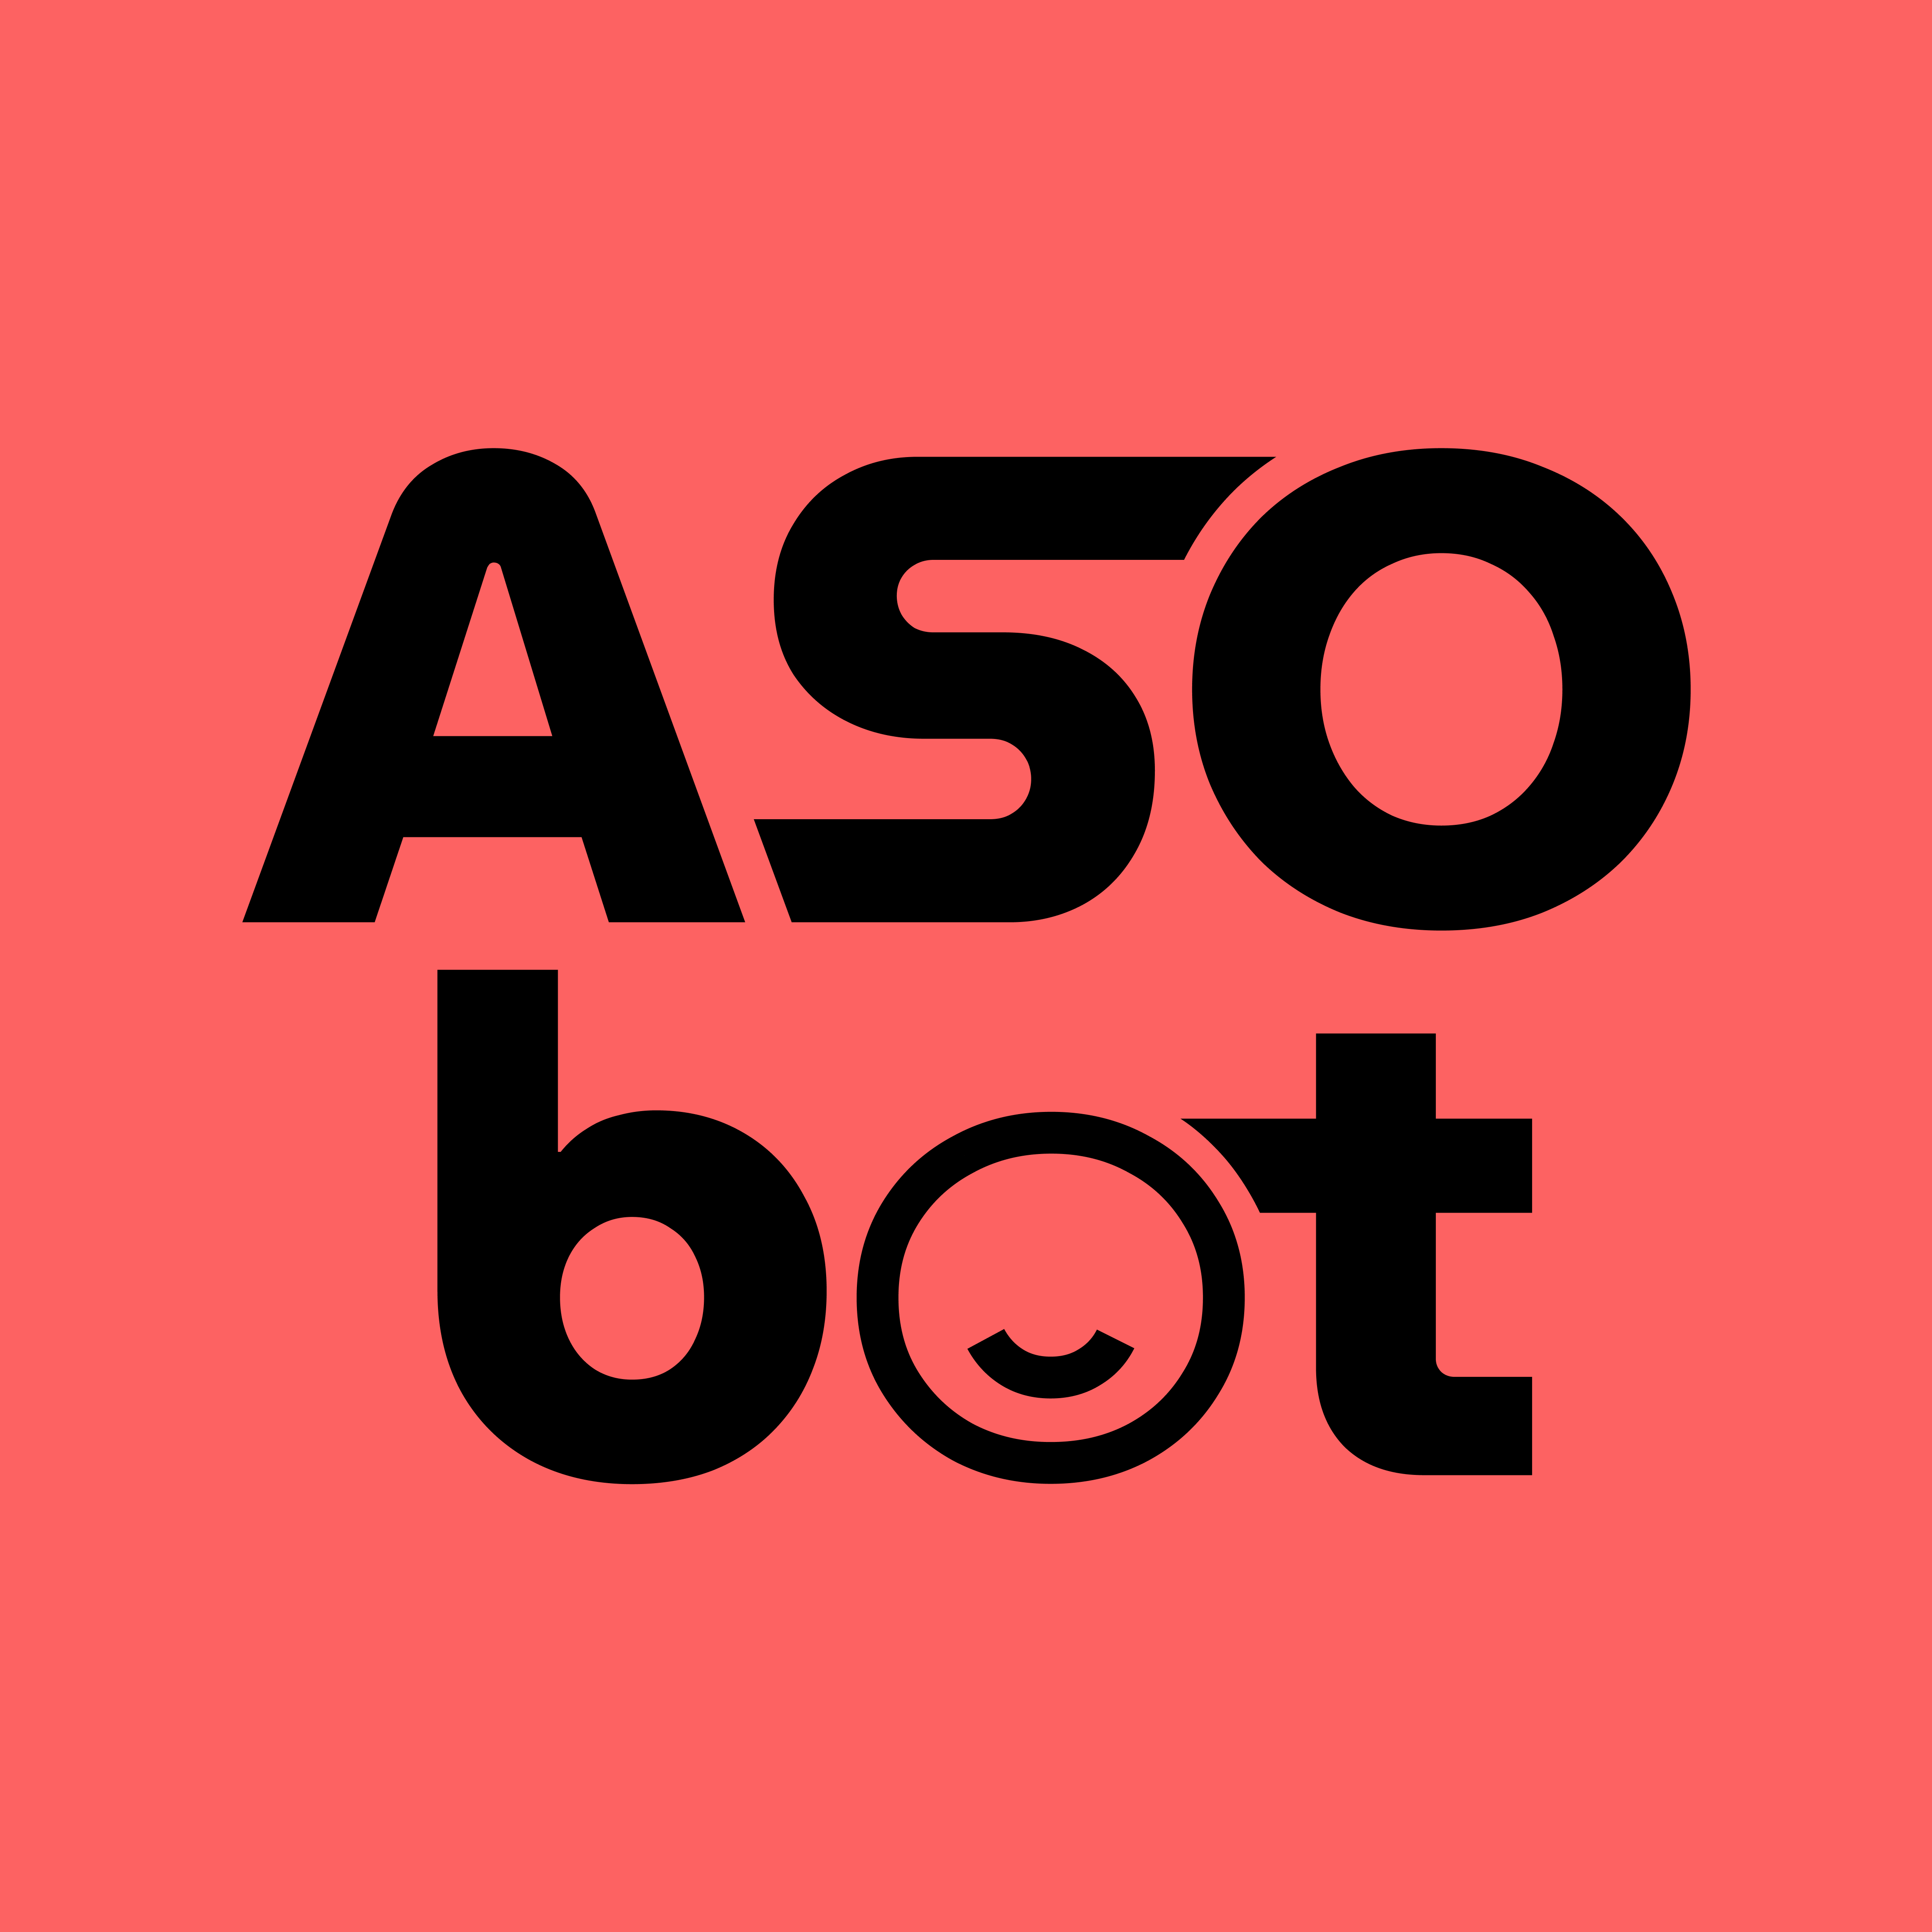 ASObot logo